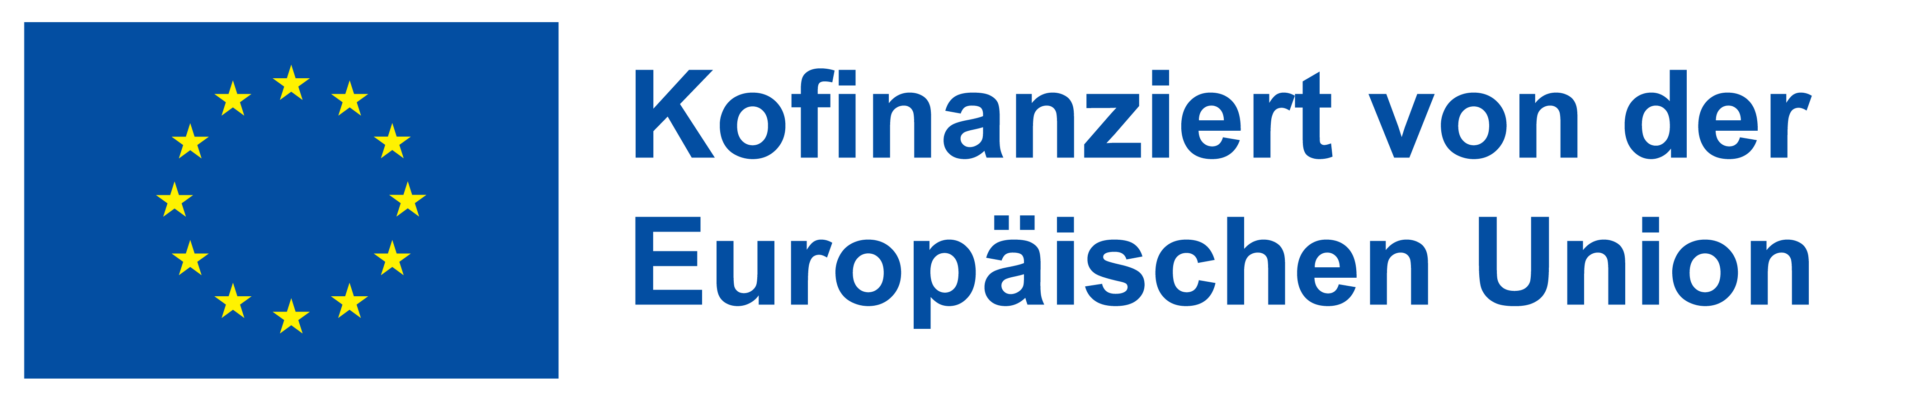 Logo Kofinanziert von der Europaeischen Union